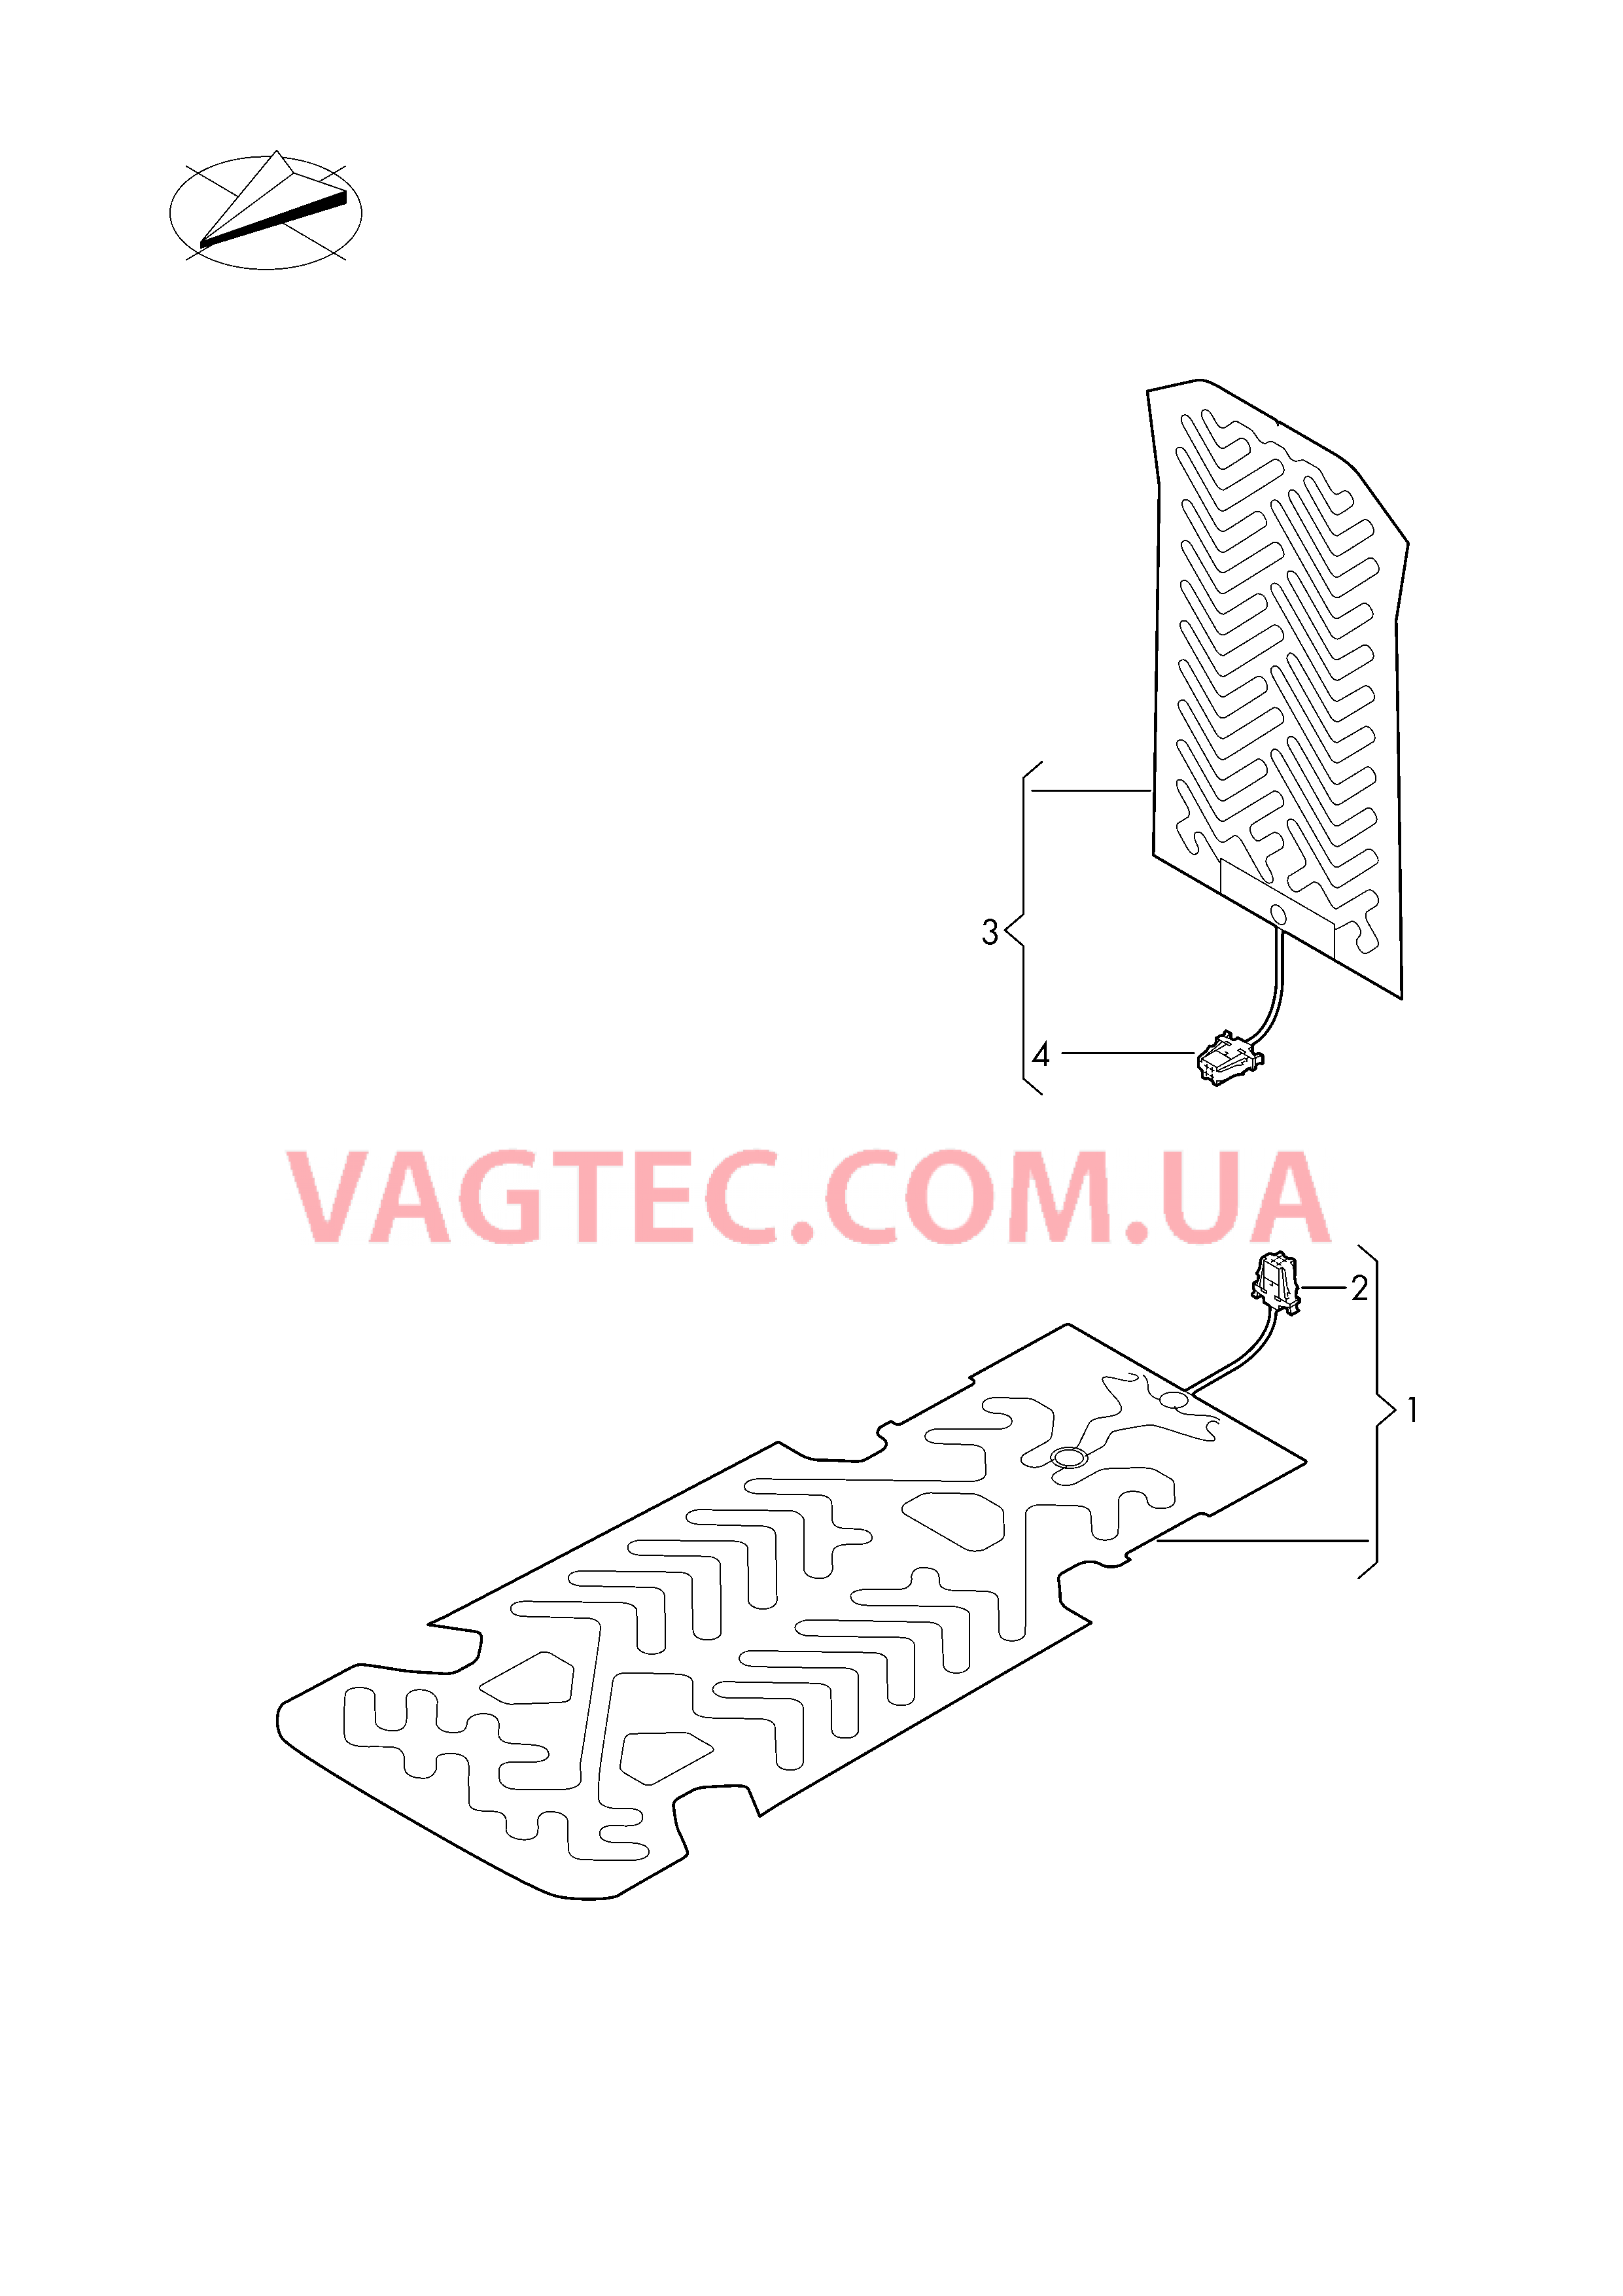 Электродетали для обогрева подушки и спинки сиденья  для VOLKSWAGEN Arteon 2019